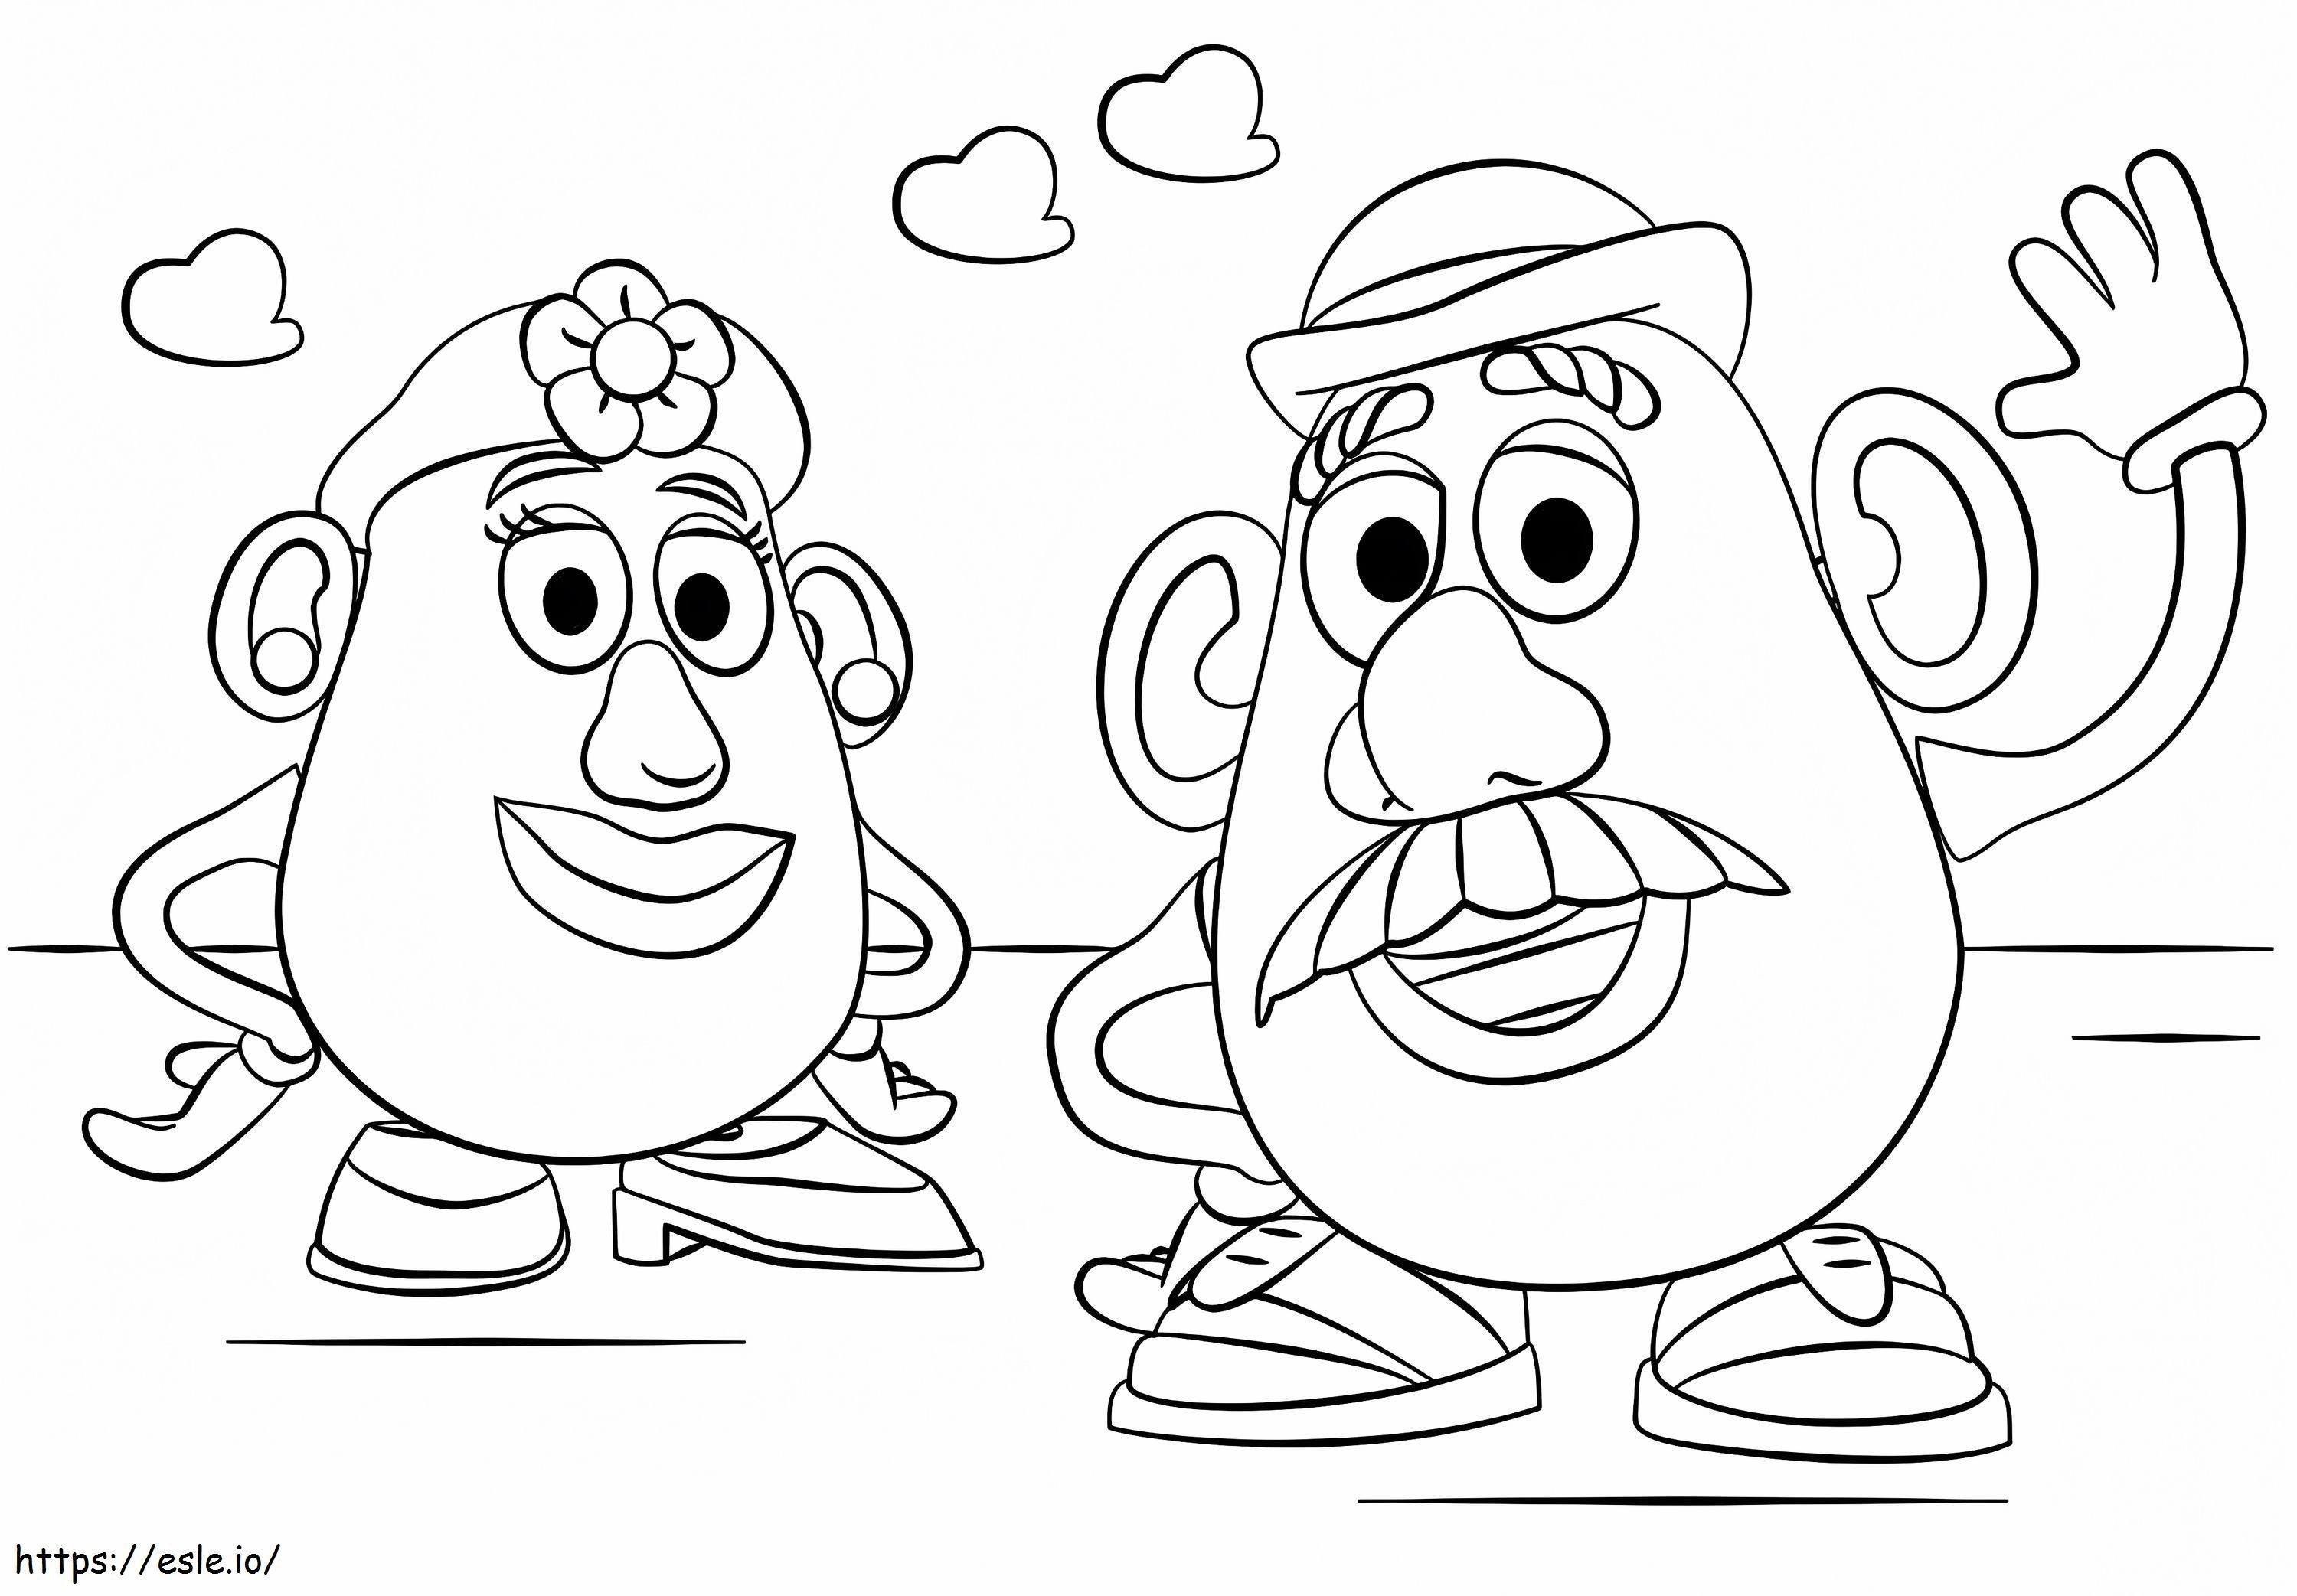 Meneer en mevrouw Potato Head kleurplaat kleurplaat